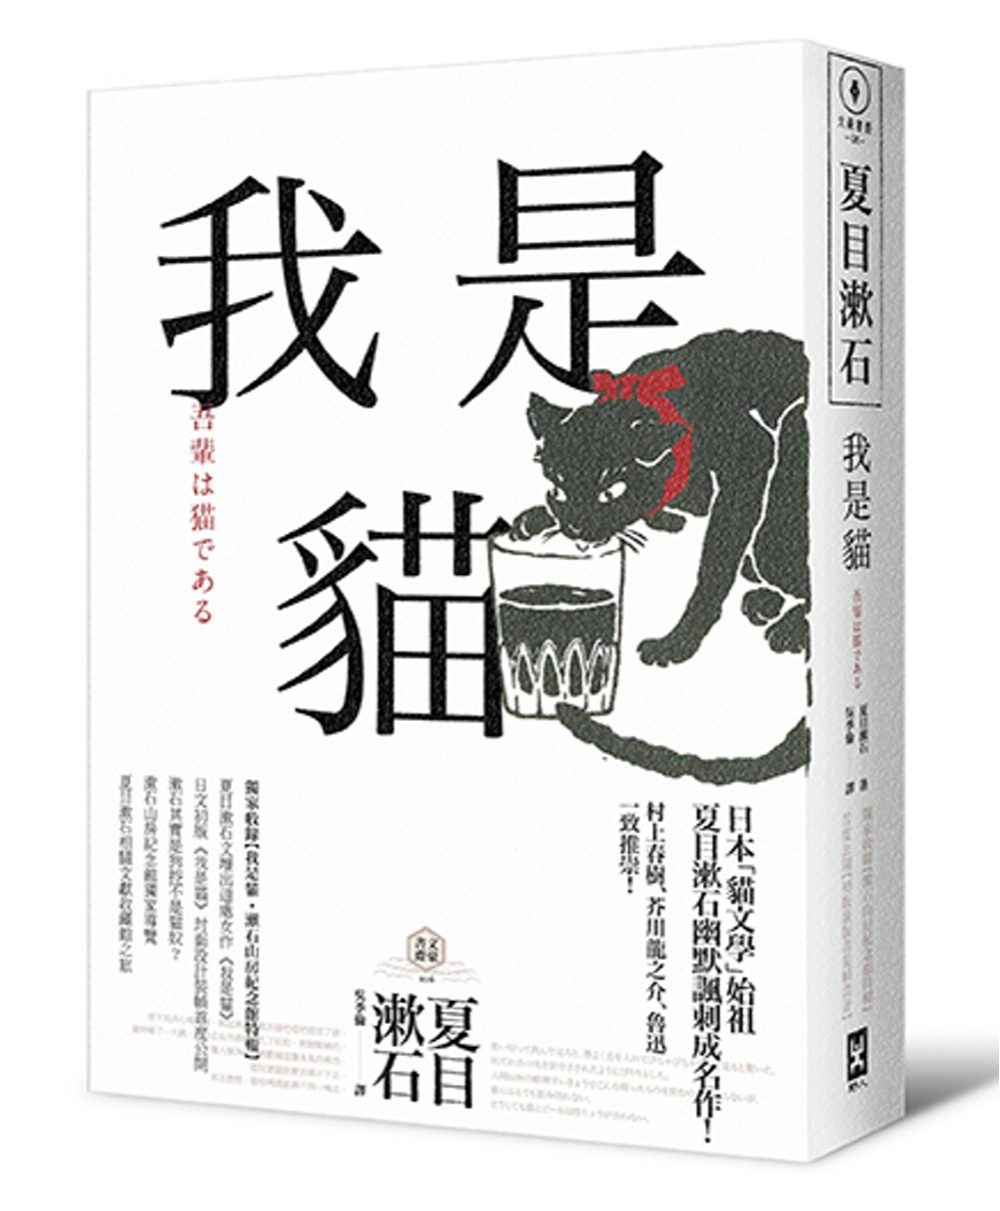 我是貓【獨家收錄1905年初版貓版畫•漱石山房紀念館特輯】：夏目漱石最受歡迎成名作